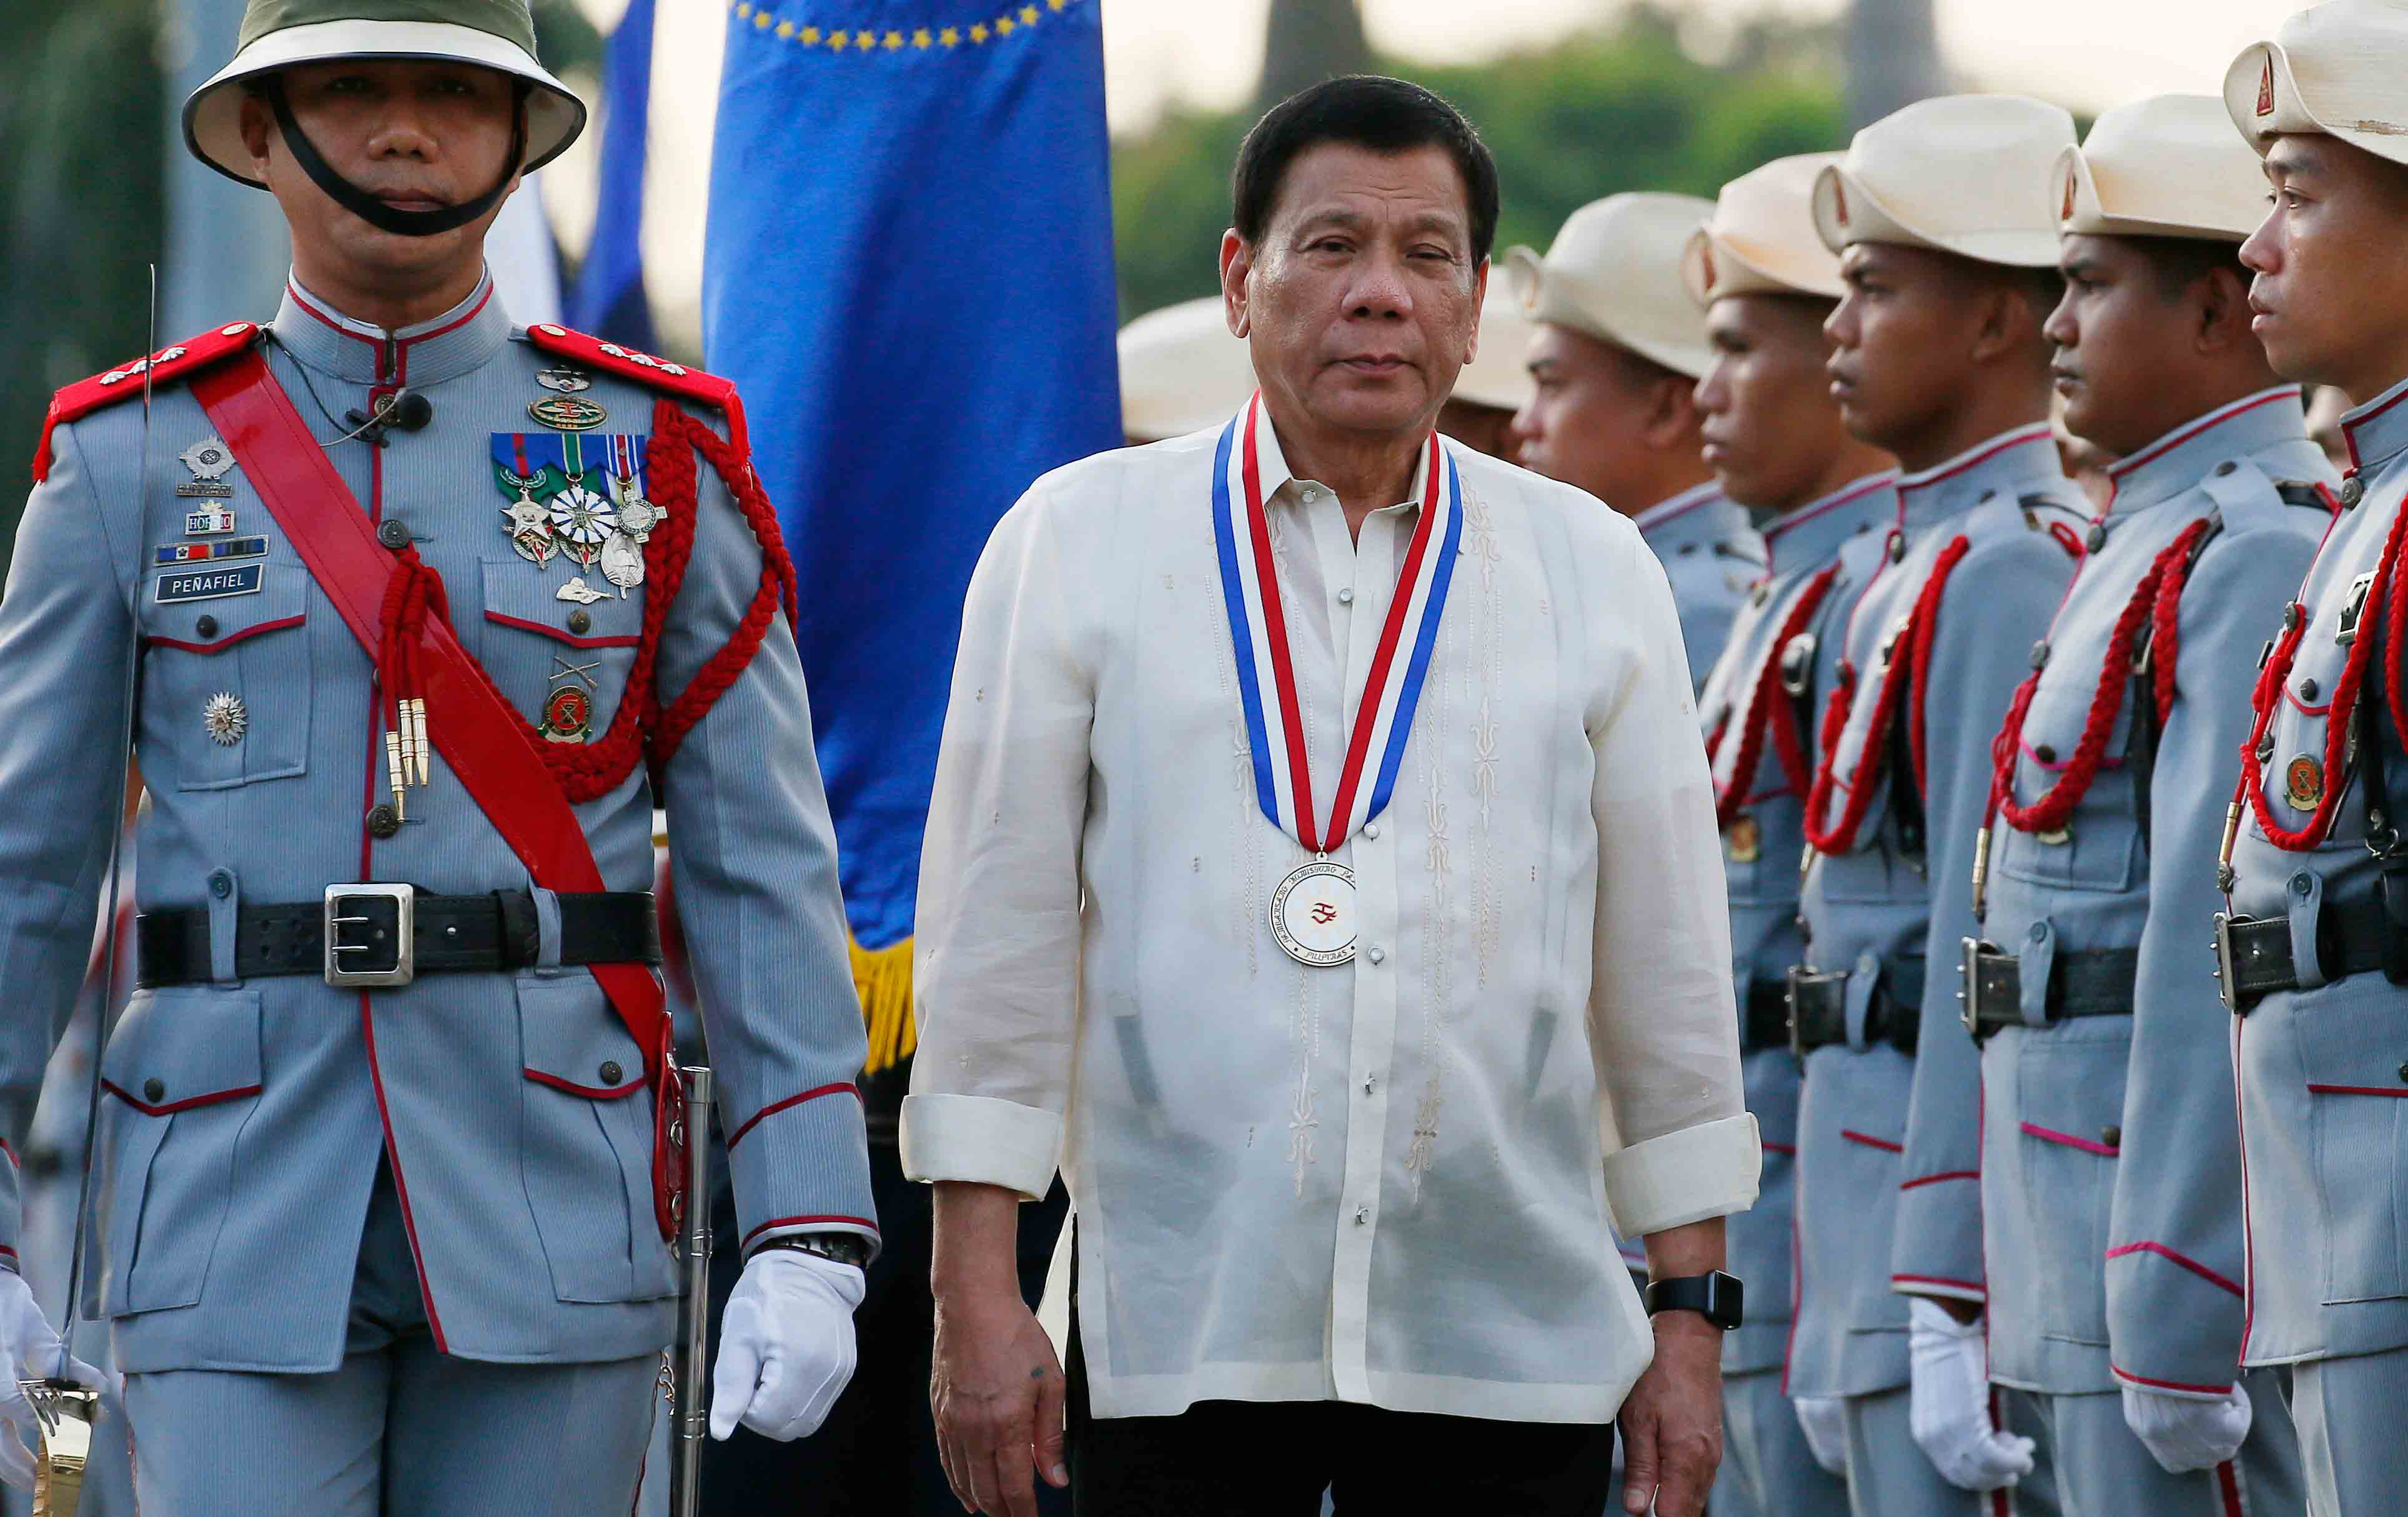 Phillippine President Rodrigo Duterte